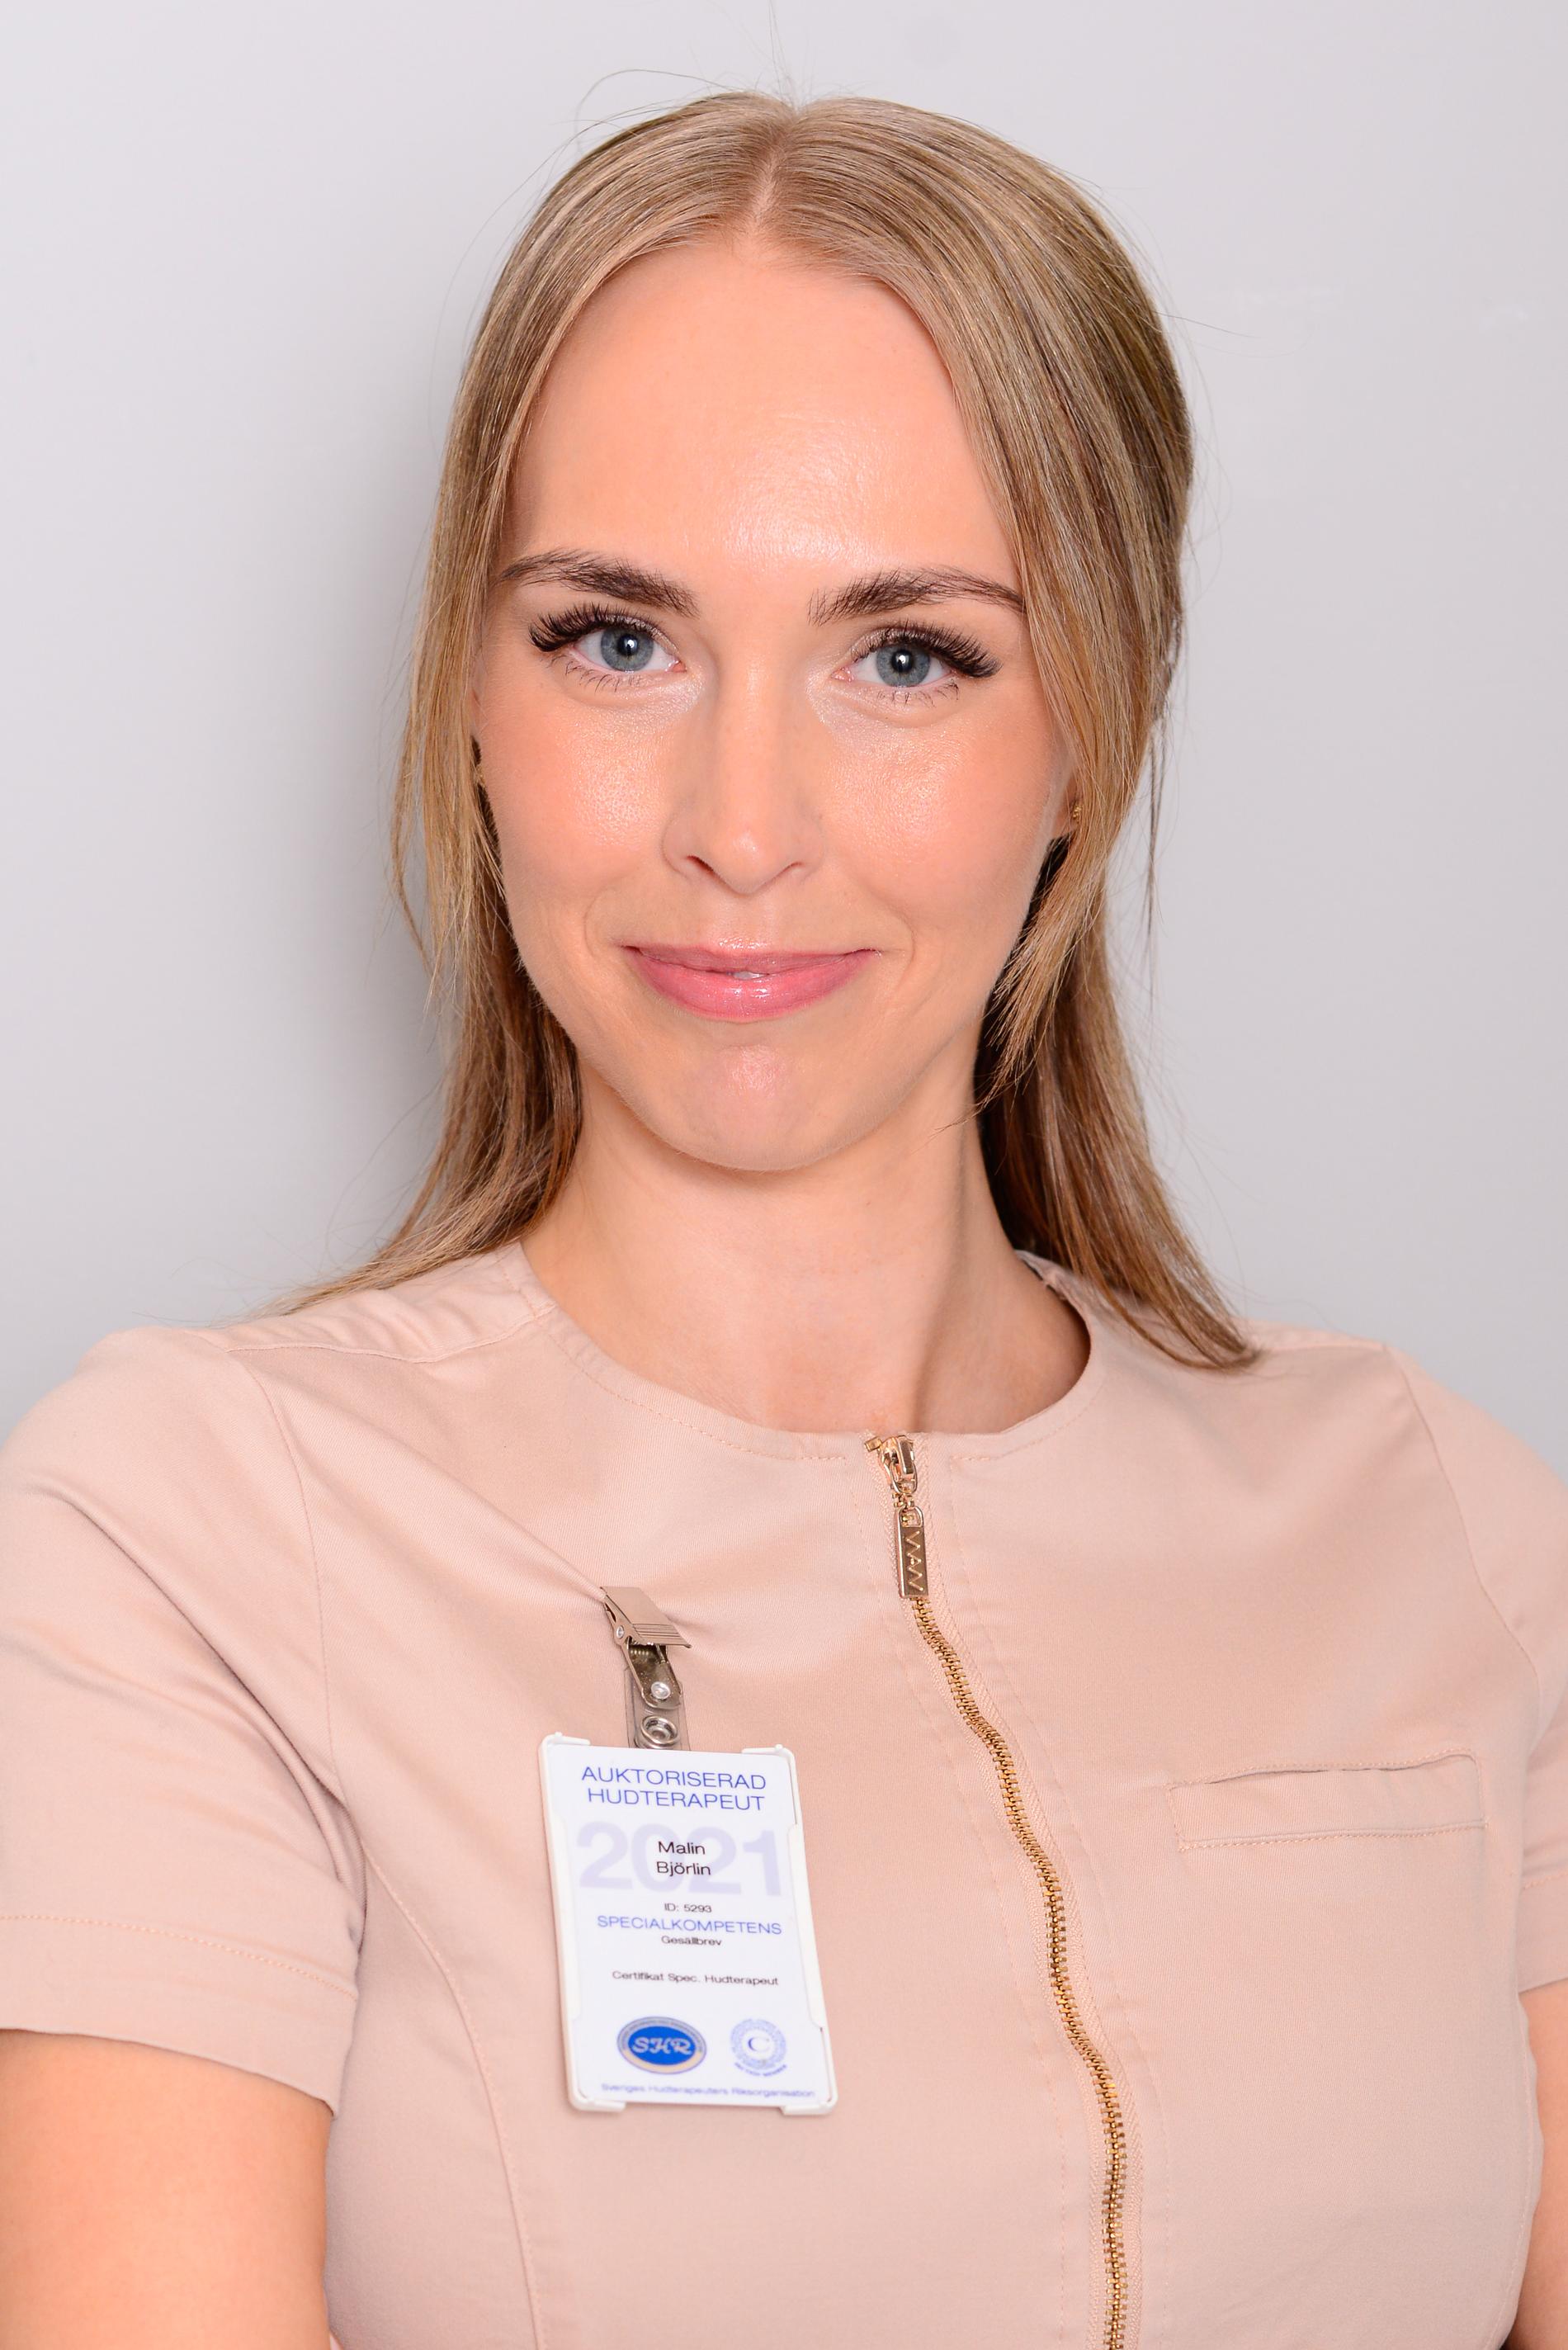 Malin Björlin, auktoriserad hudterapeut och vice ordförande för SHR, Sveriges hudterapeuters riksorganisation.